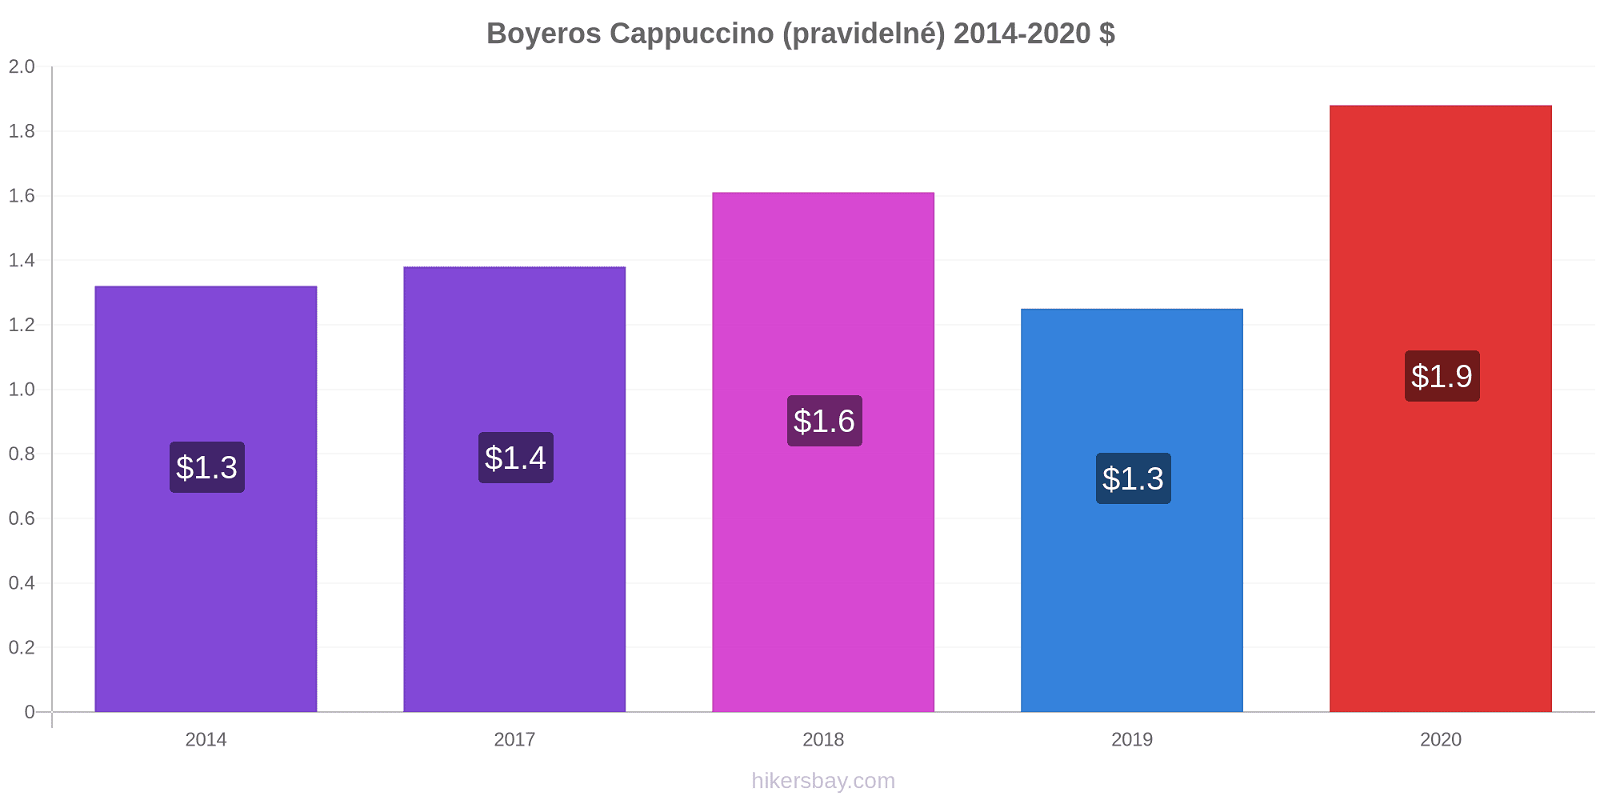 Boyeros změny cen Cappuccino (pravidelné) hikersbay.com